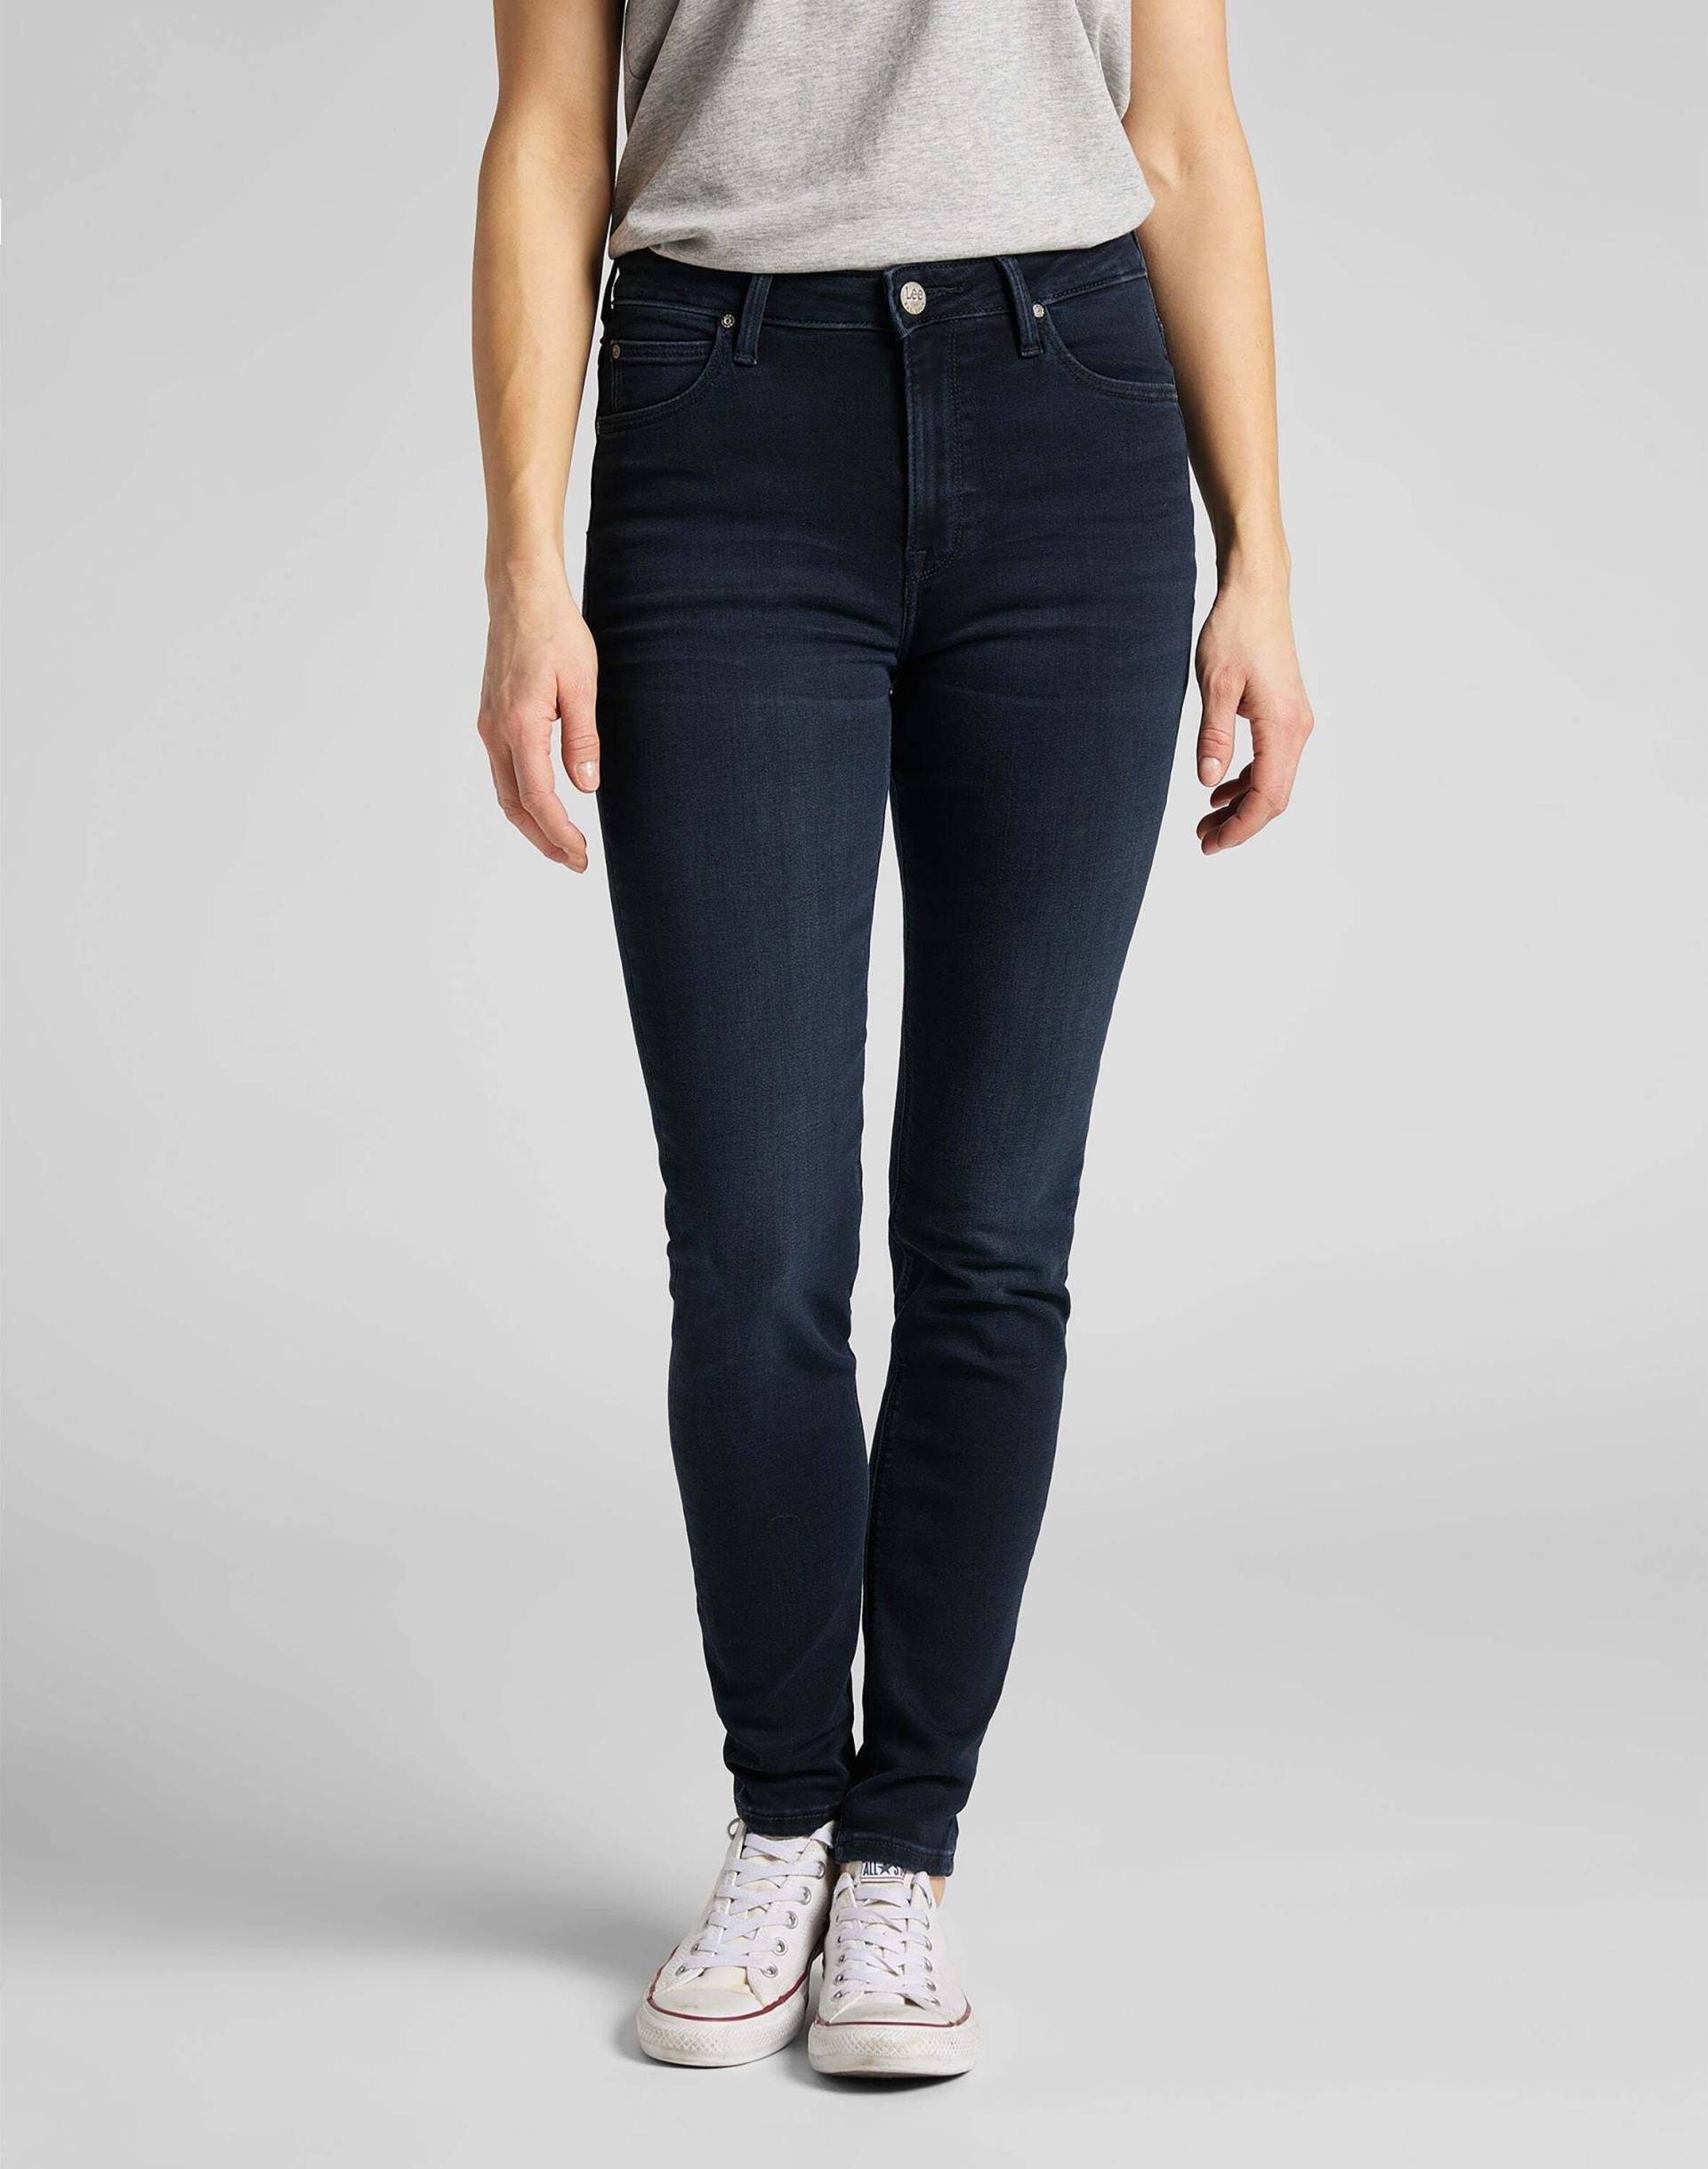 Jeans Skinny Fit Scarlett High Damen Marine L33/W28 von Lee